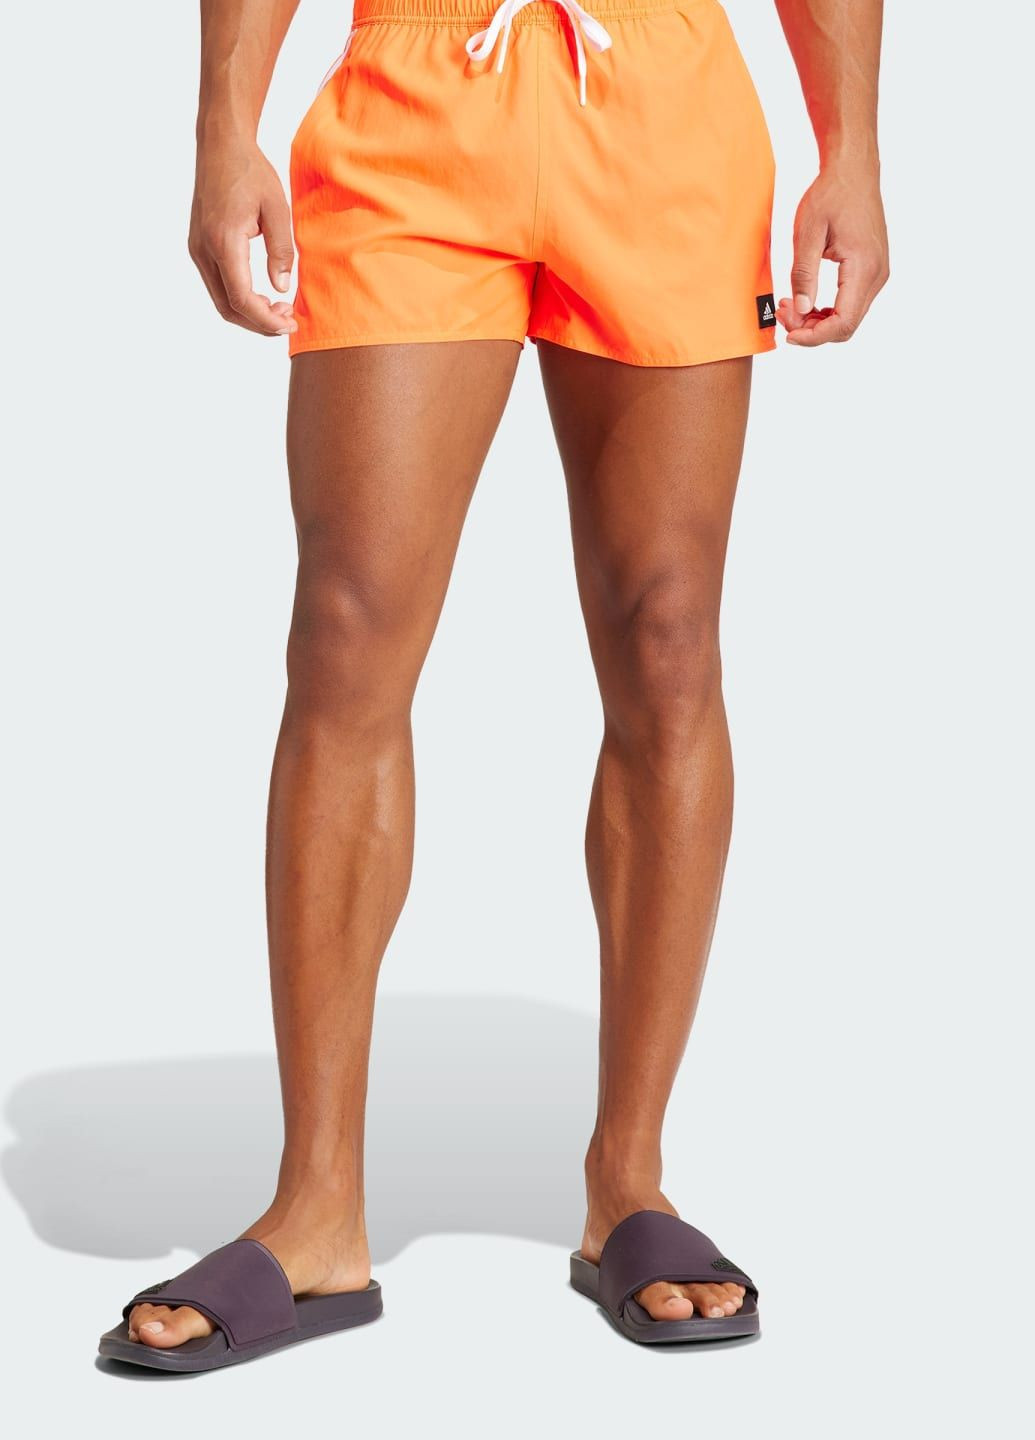 Мужские красные спортивные короткие плавательные шорты 3-stripes clx adidas